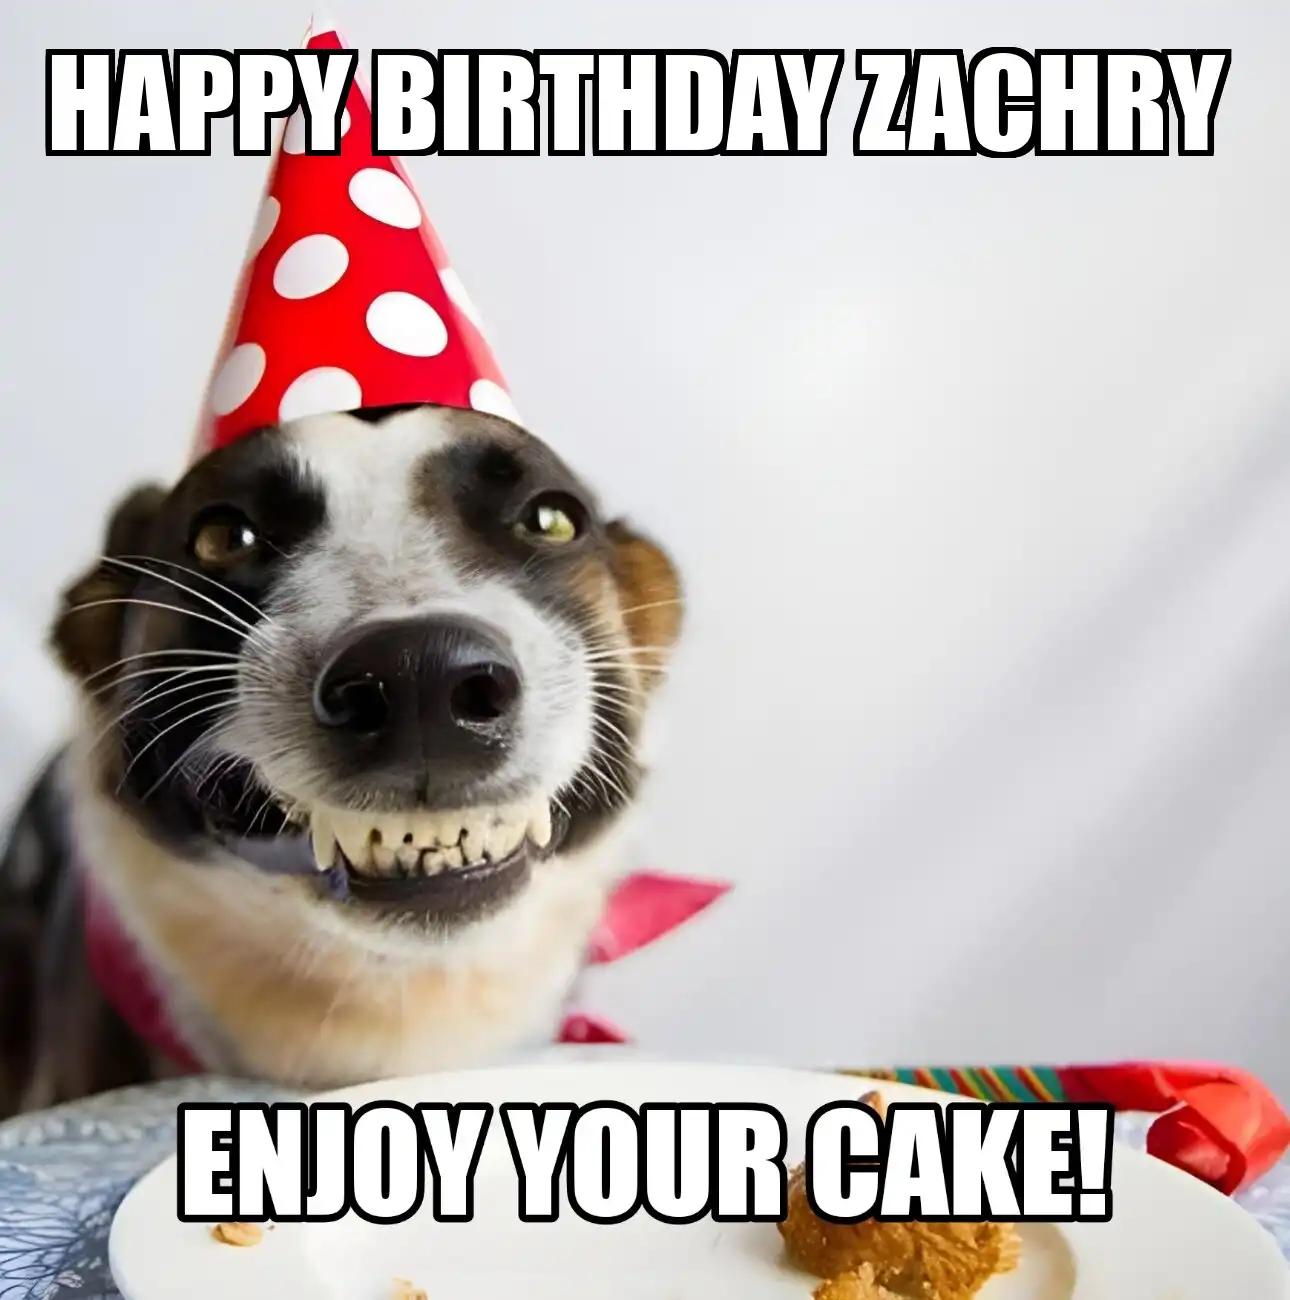 Happy Birthday Zachry Enjoy Your Cake Dog Meme